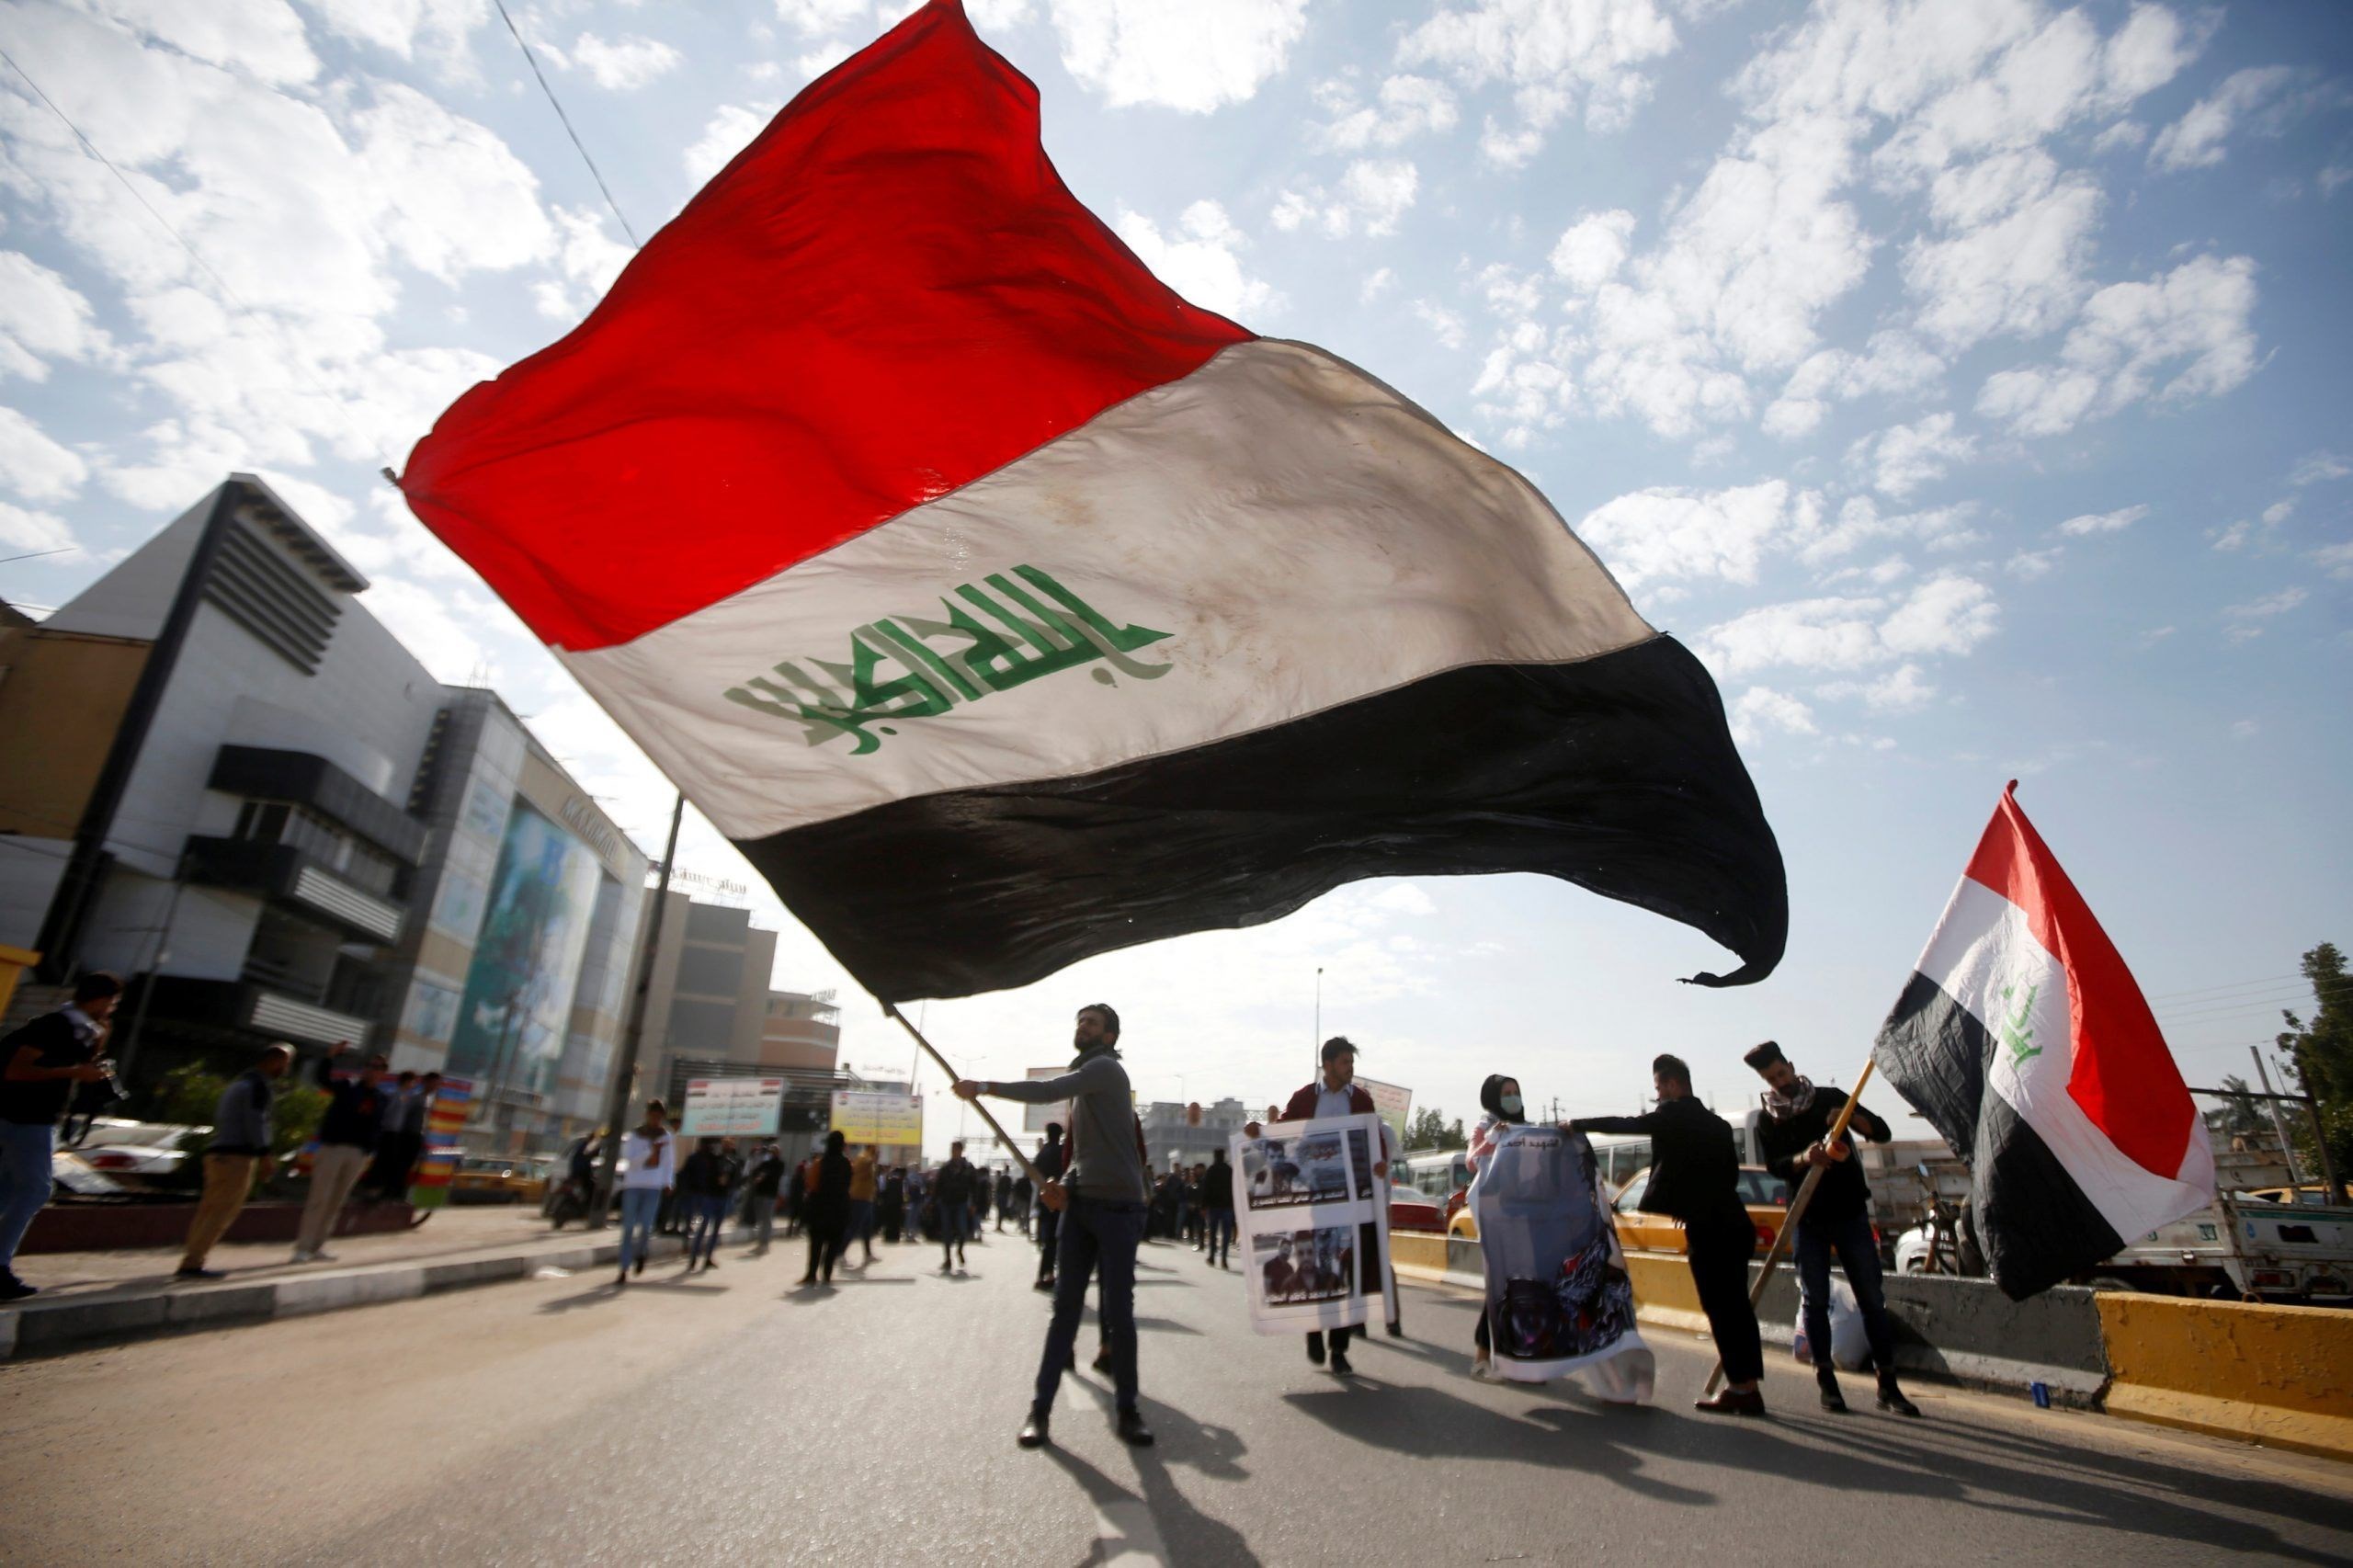 سلطات العراق تدعو للحوار لحل الأزمة السياسية بالبلاد